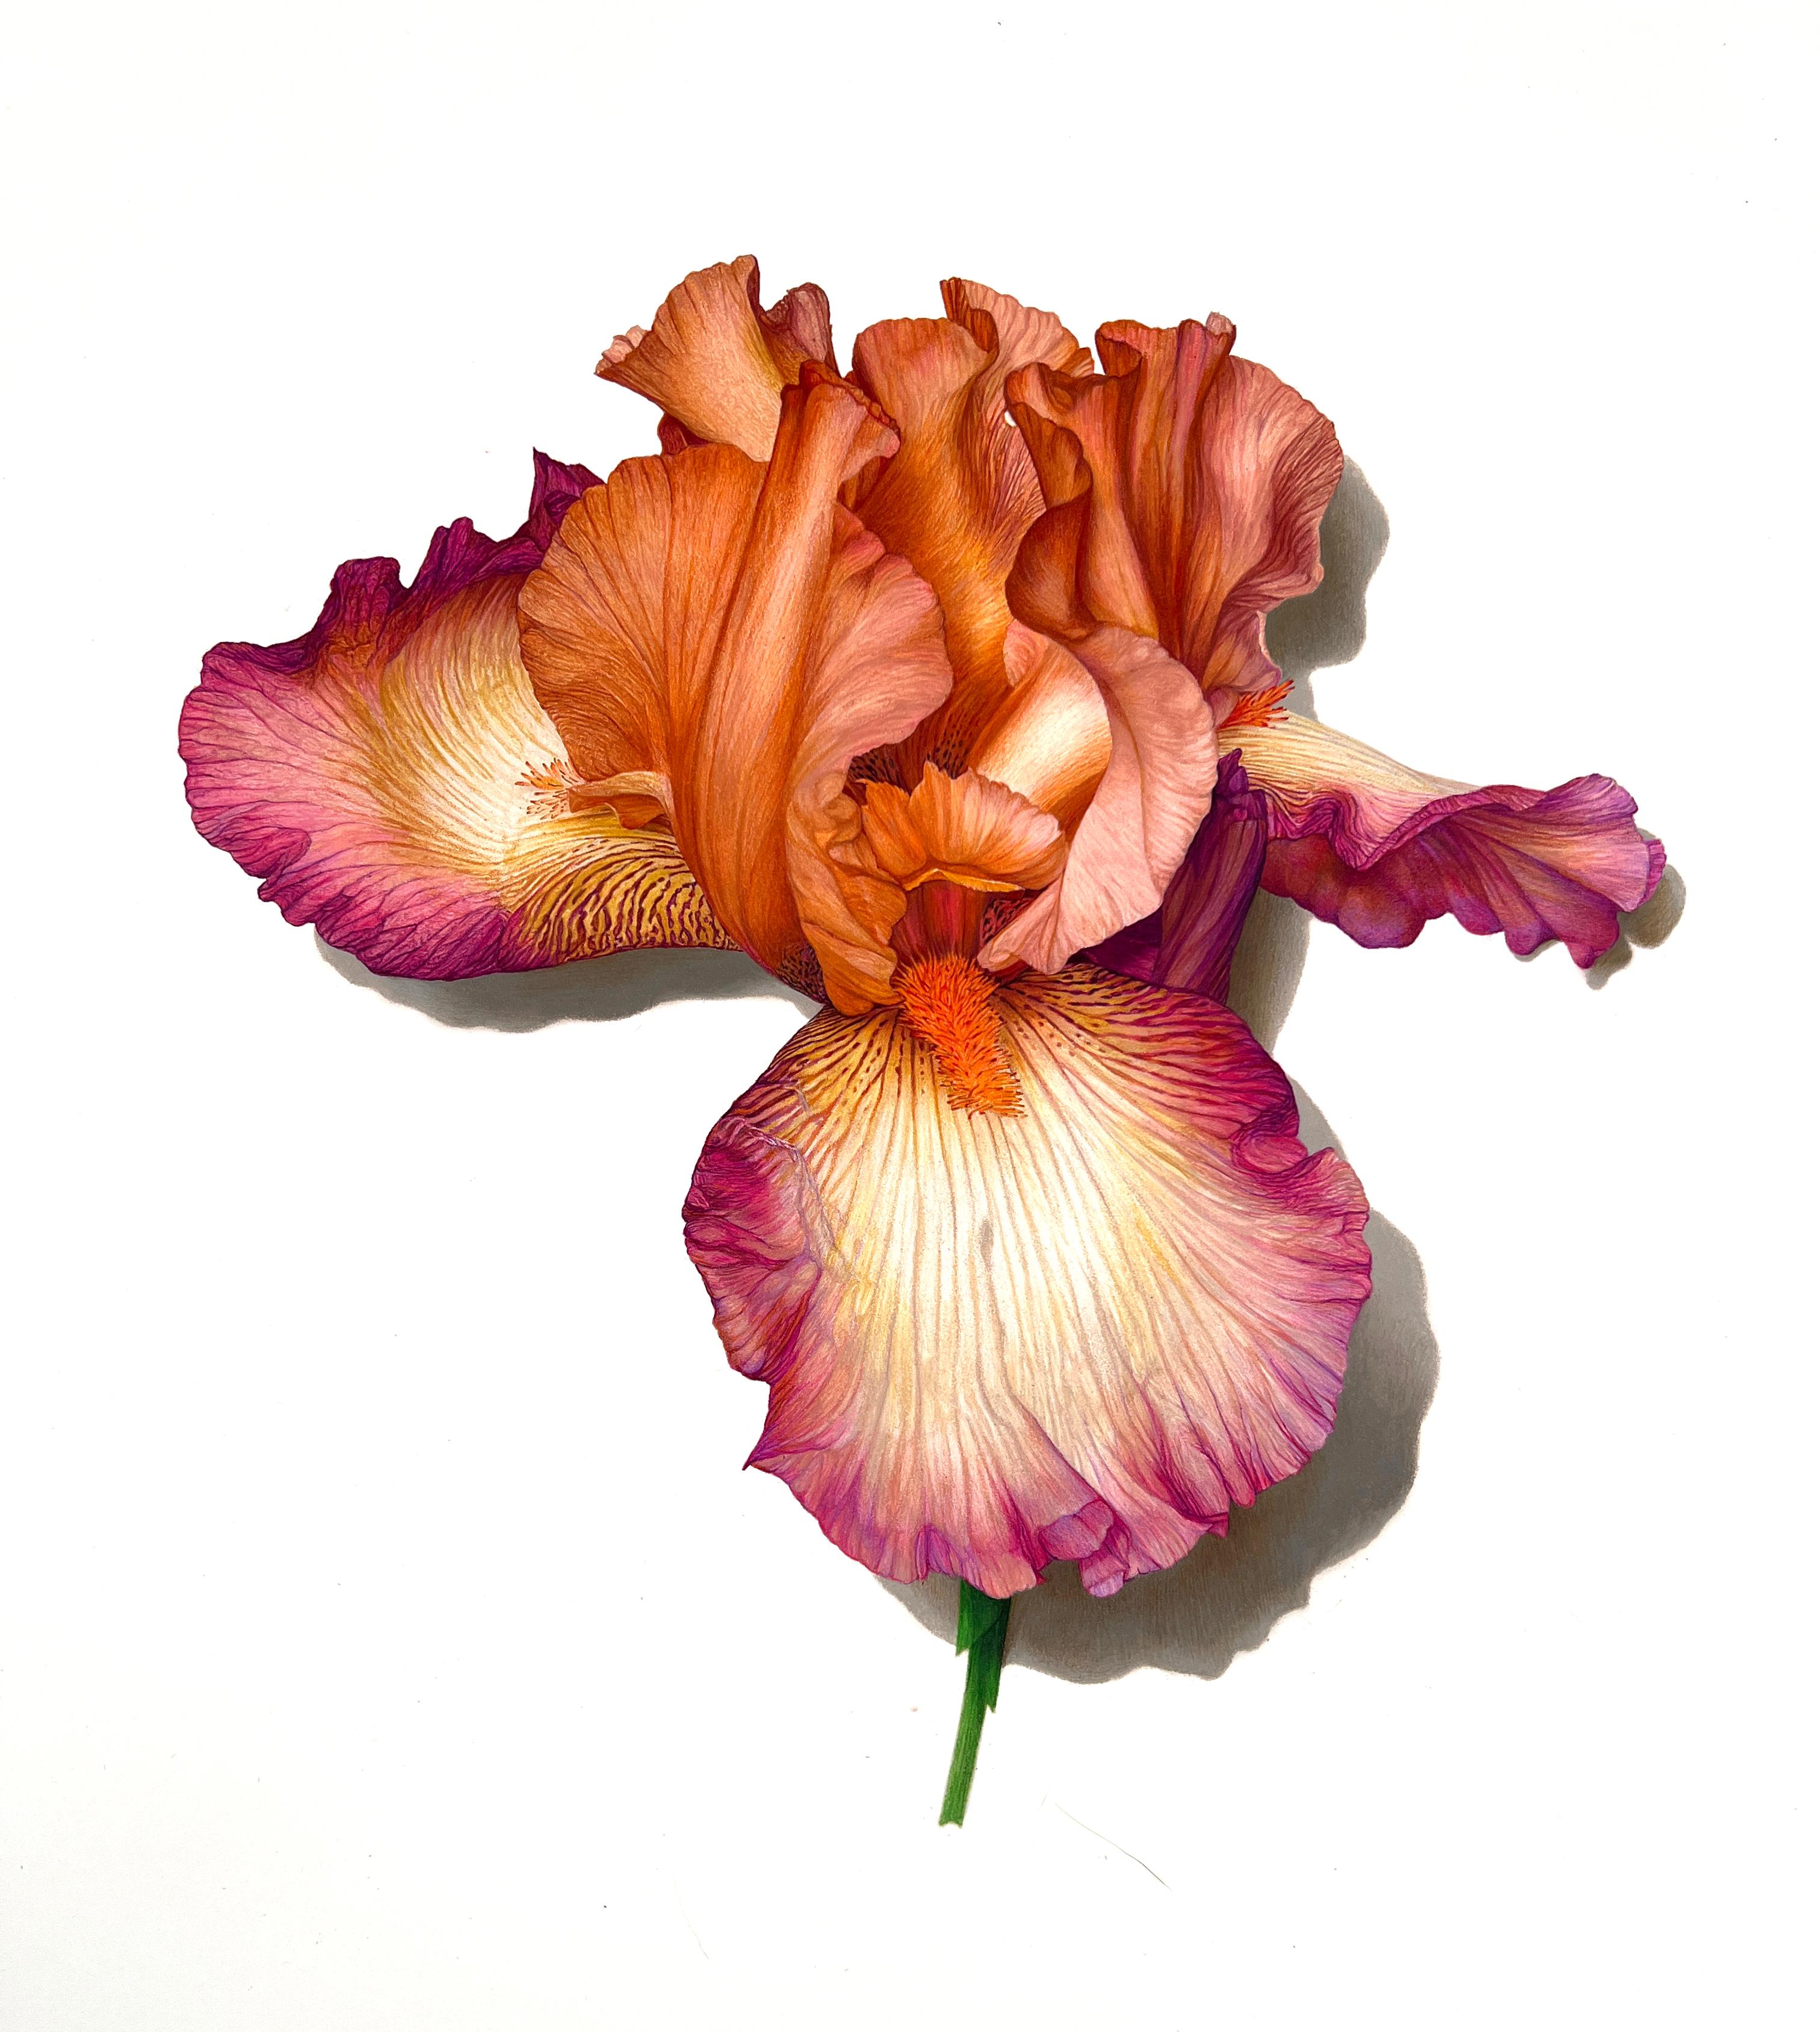 Snapshot Série n° 2 (Iris), dessin de nature morte au crayon en couleur photoréaliste